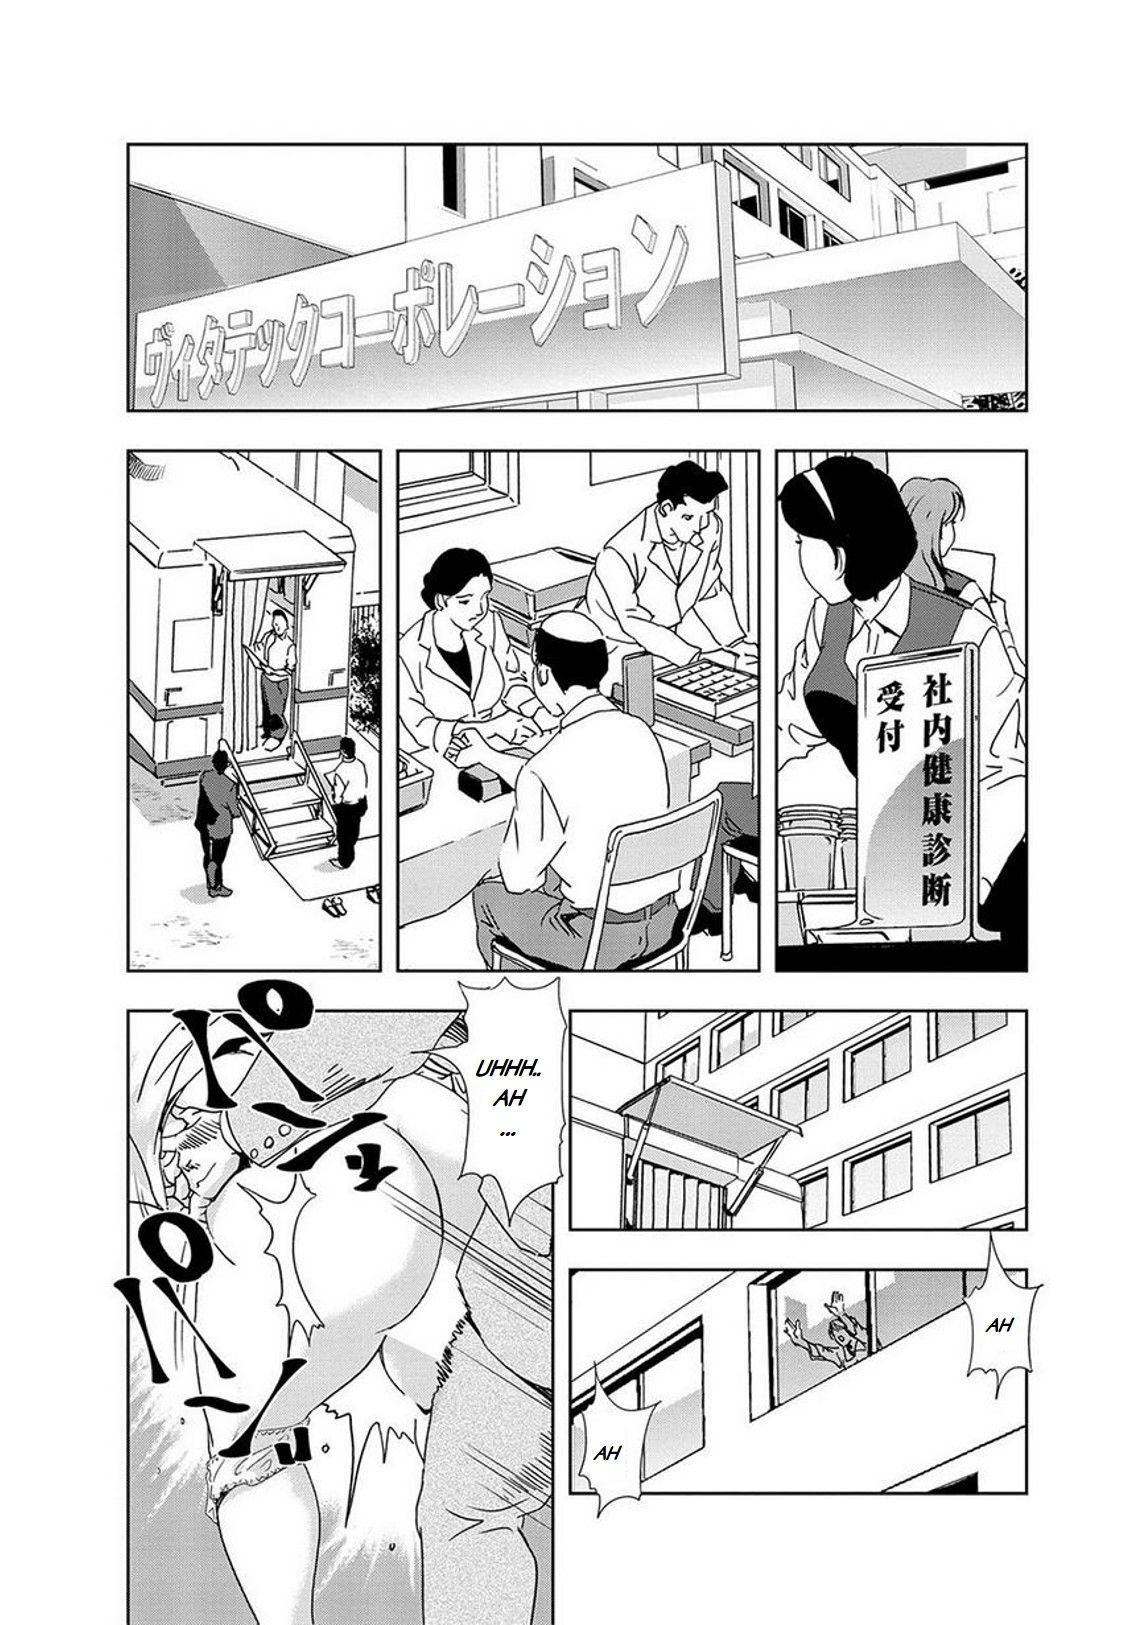 Nikuhisyo Yukiko 16 page 2